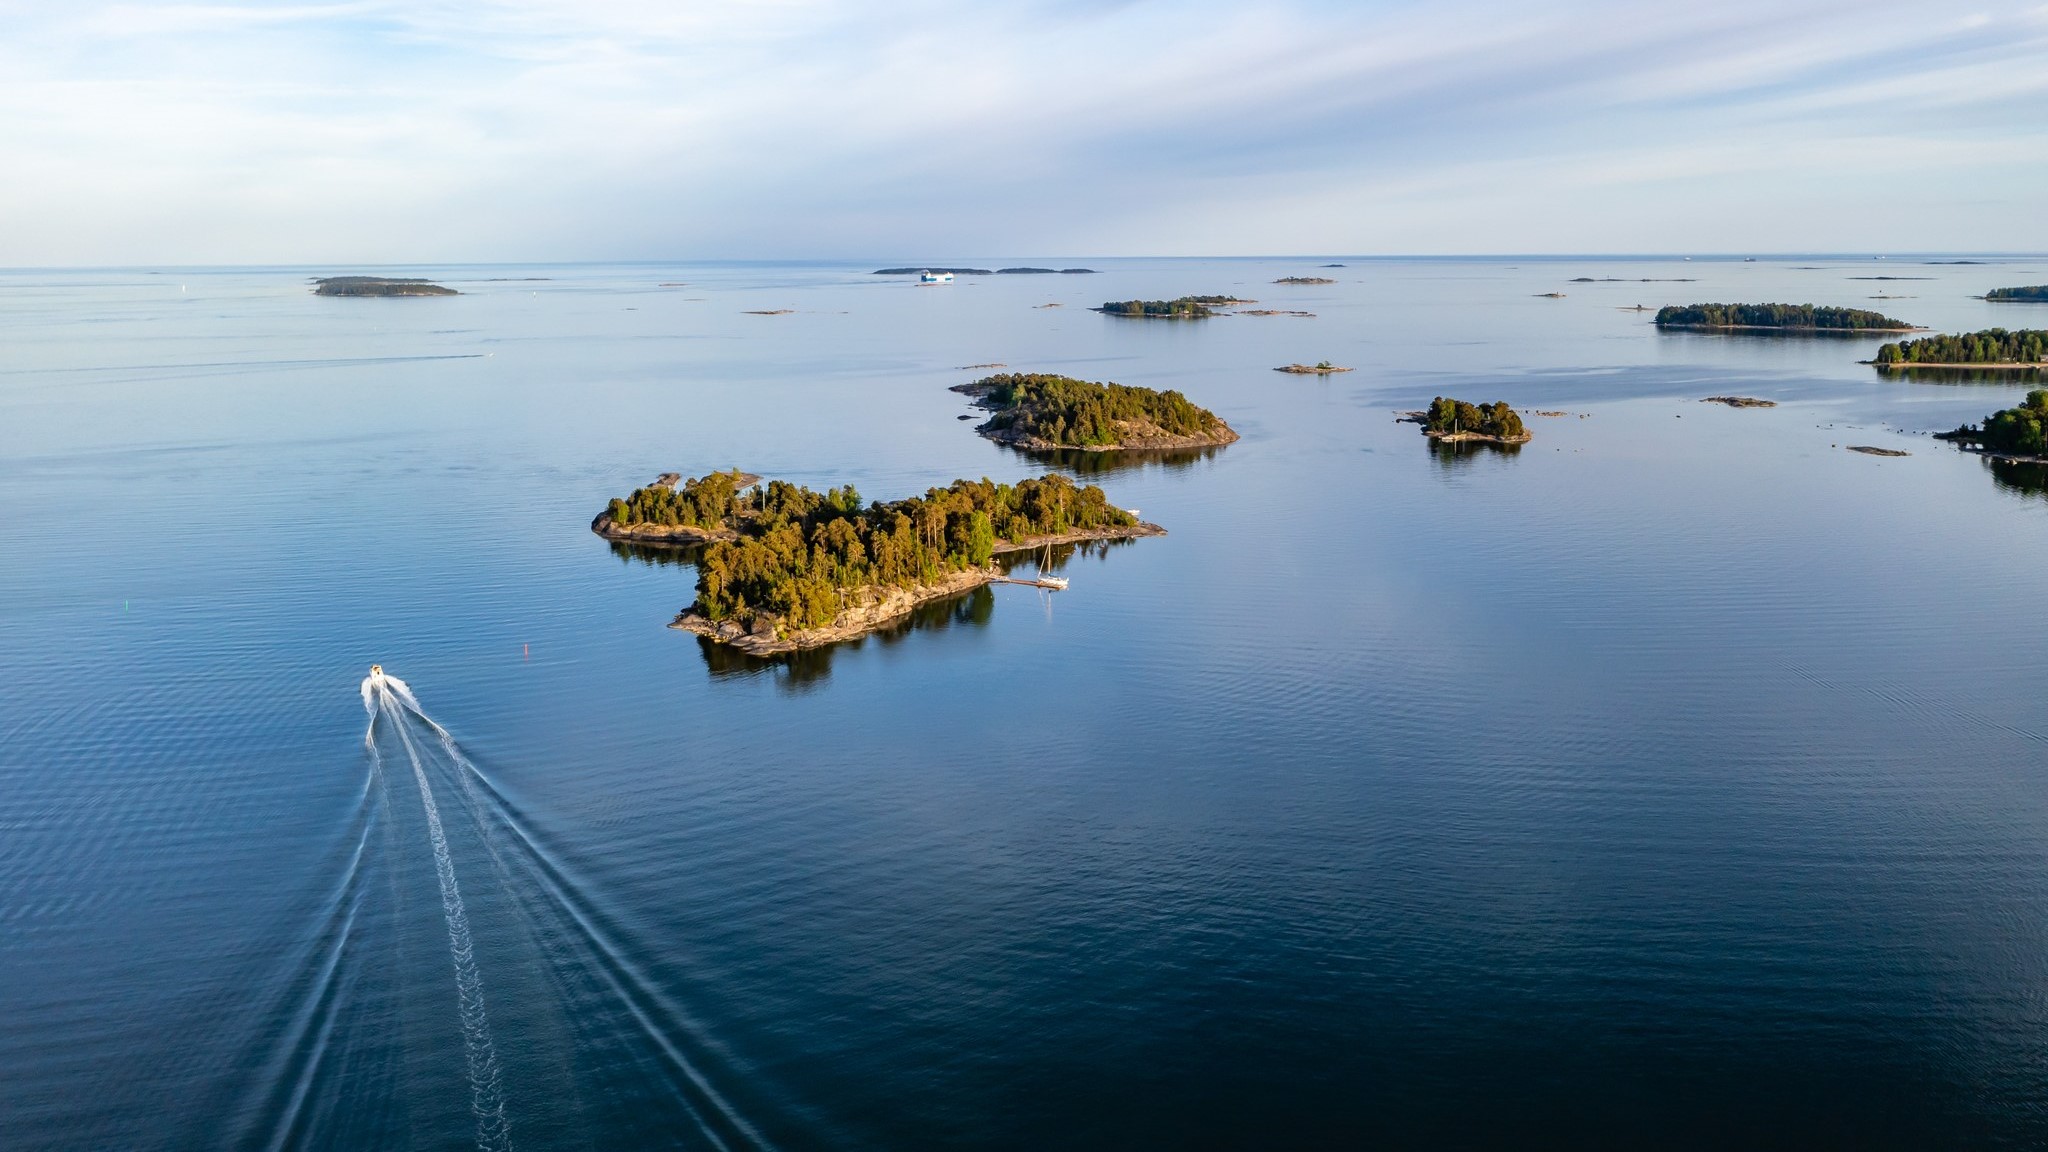 Vene saaristossa ilmakuvassa (Kuva: Shutterstock/LVM)